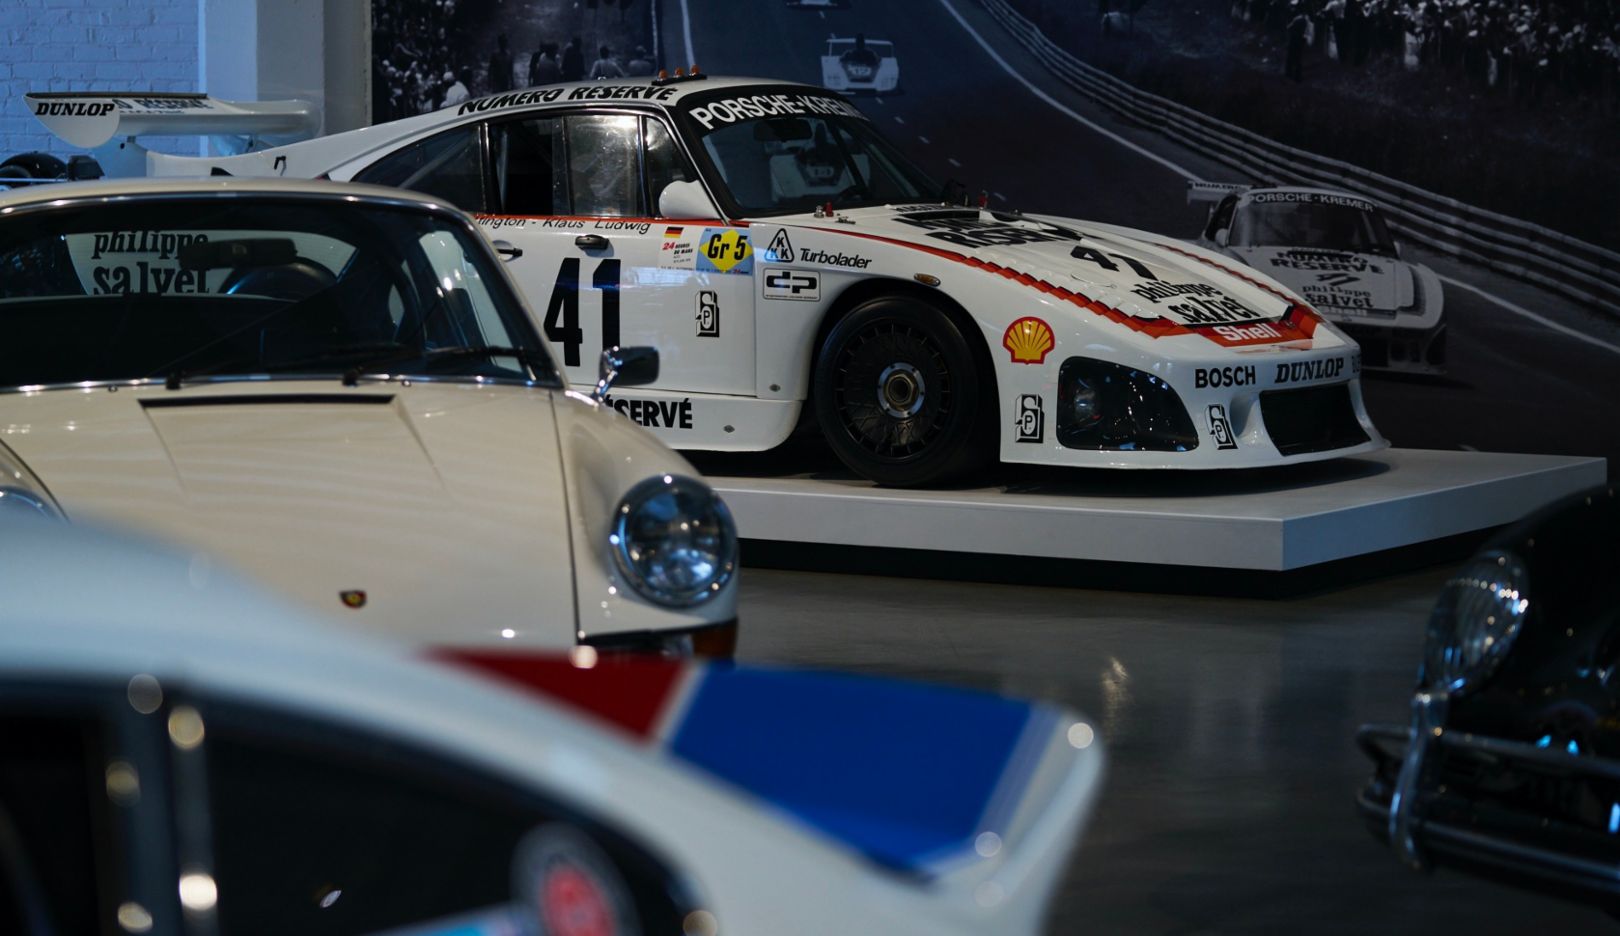 Vista sulla coda d'anatra: La 935 non è l'unico modello Porsche presente nel garage di Meyer.